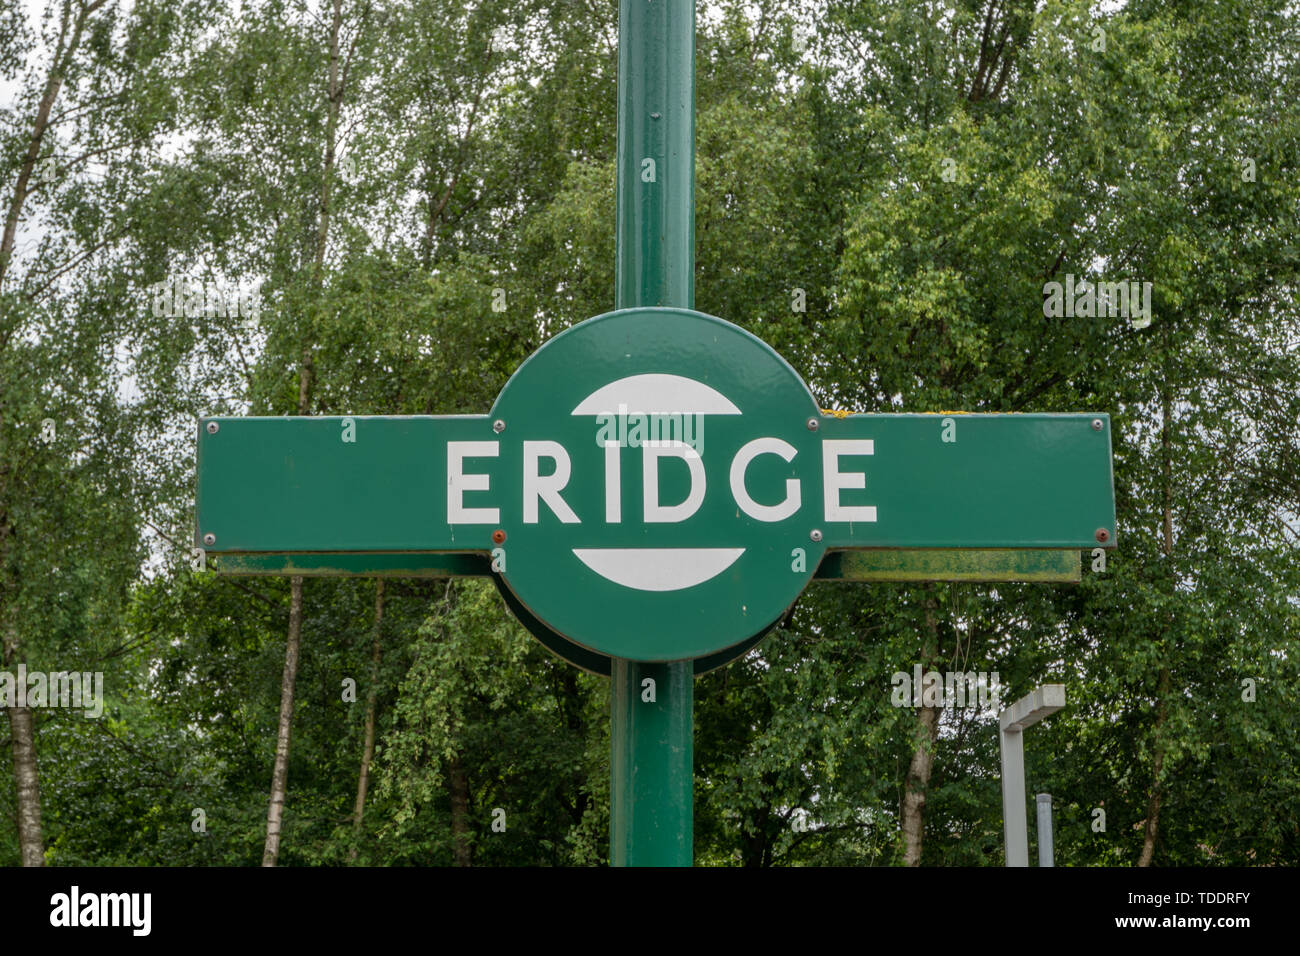 Eridge station sign Stock Photo